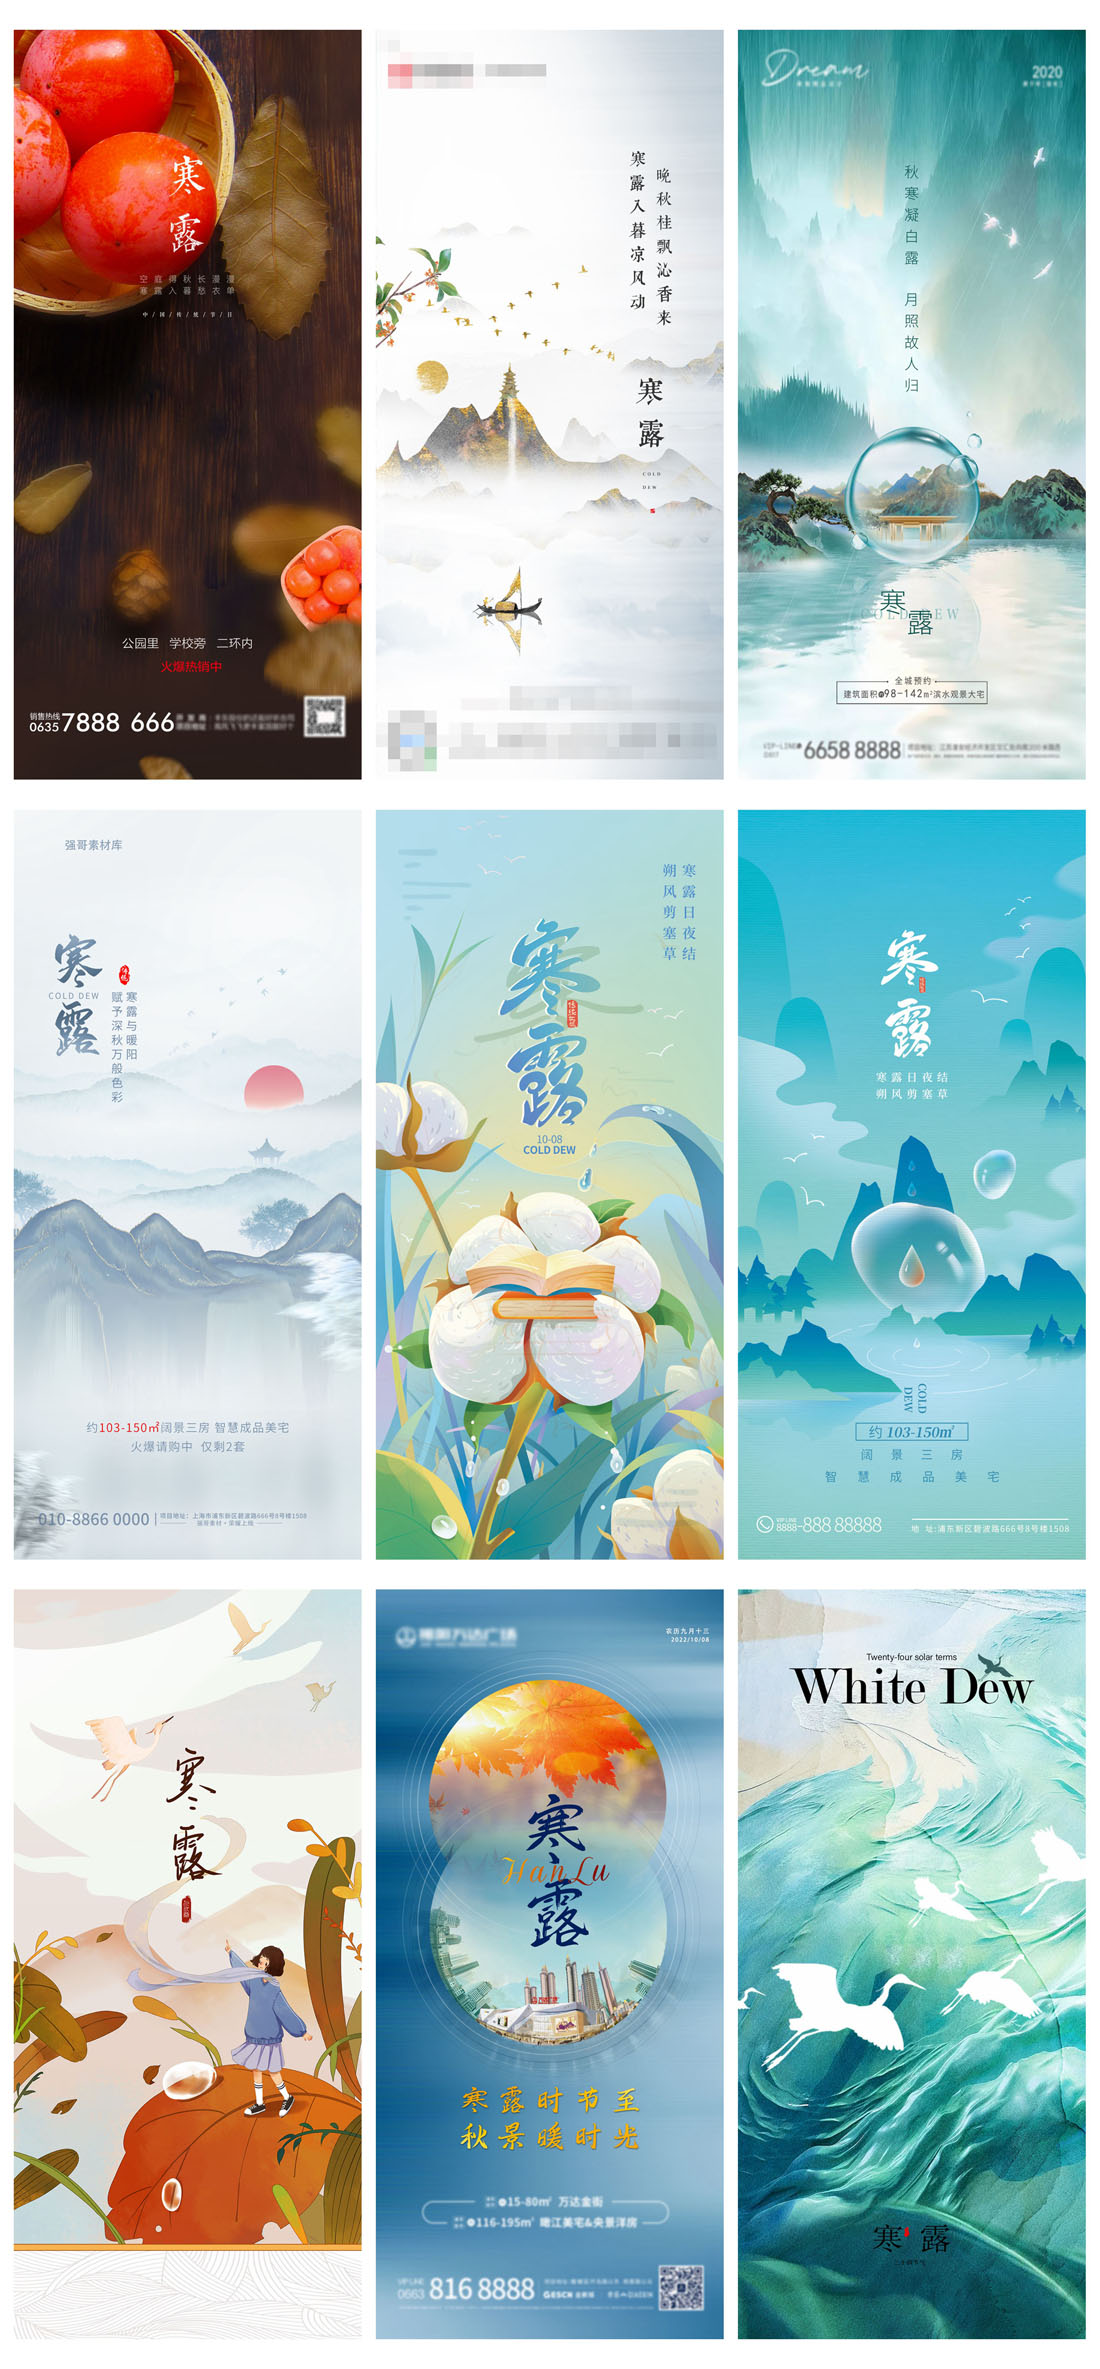 94款中国传统二十四节气之寒露节日海报PSD模板 设计素材 第20张